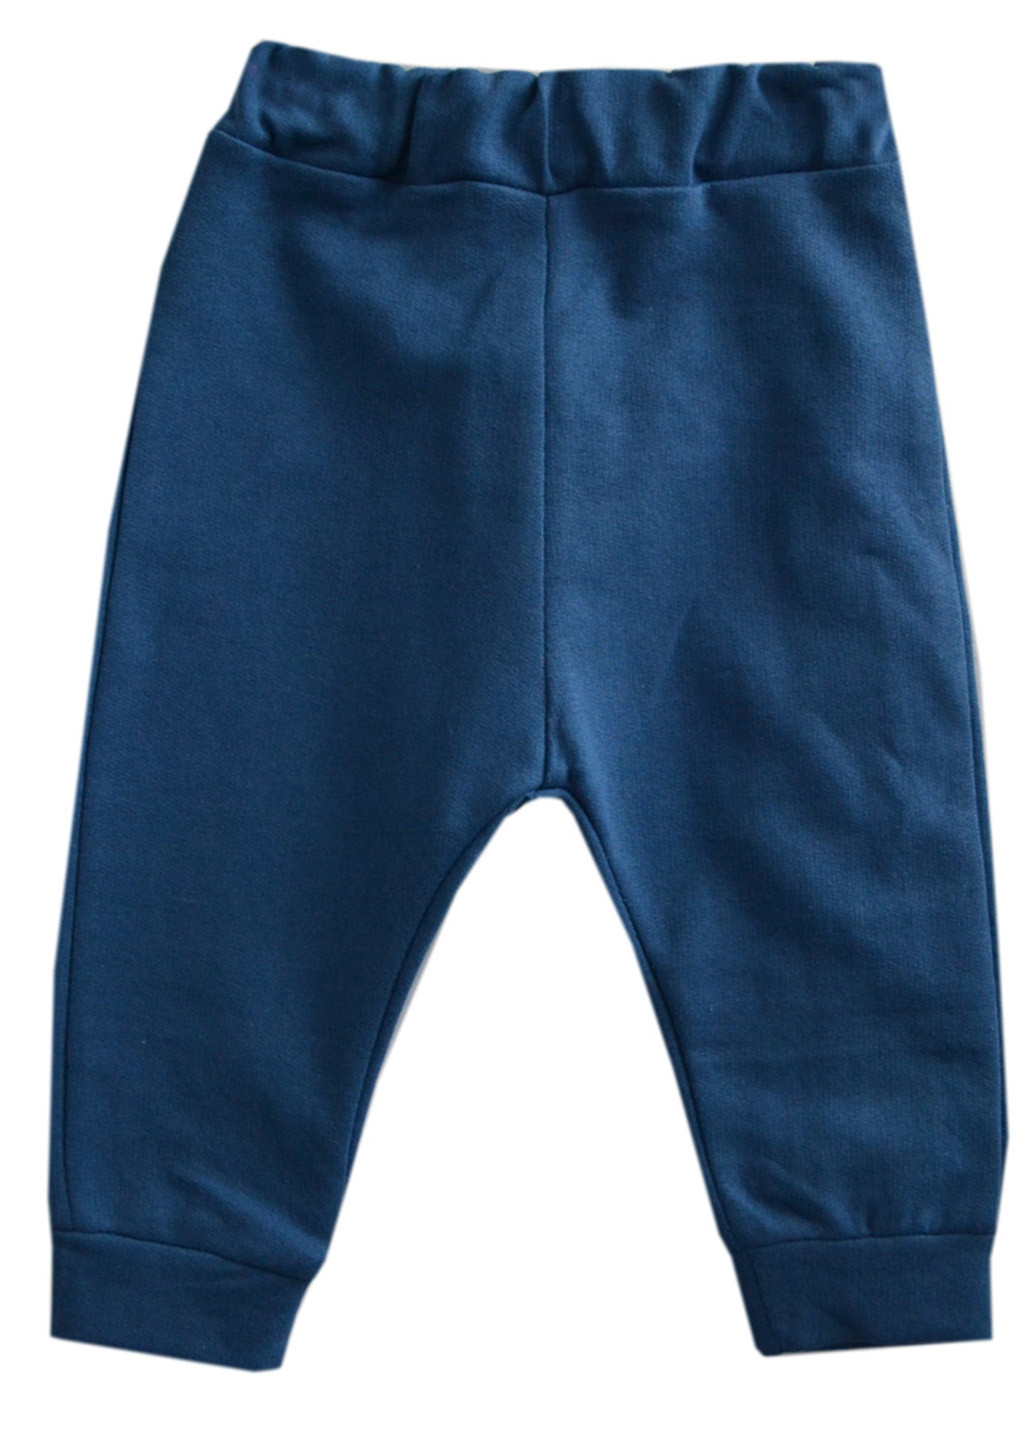 Синие домашние демисезонные со средней талией брюки Витуся